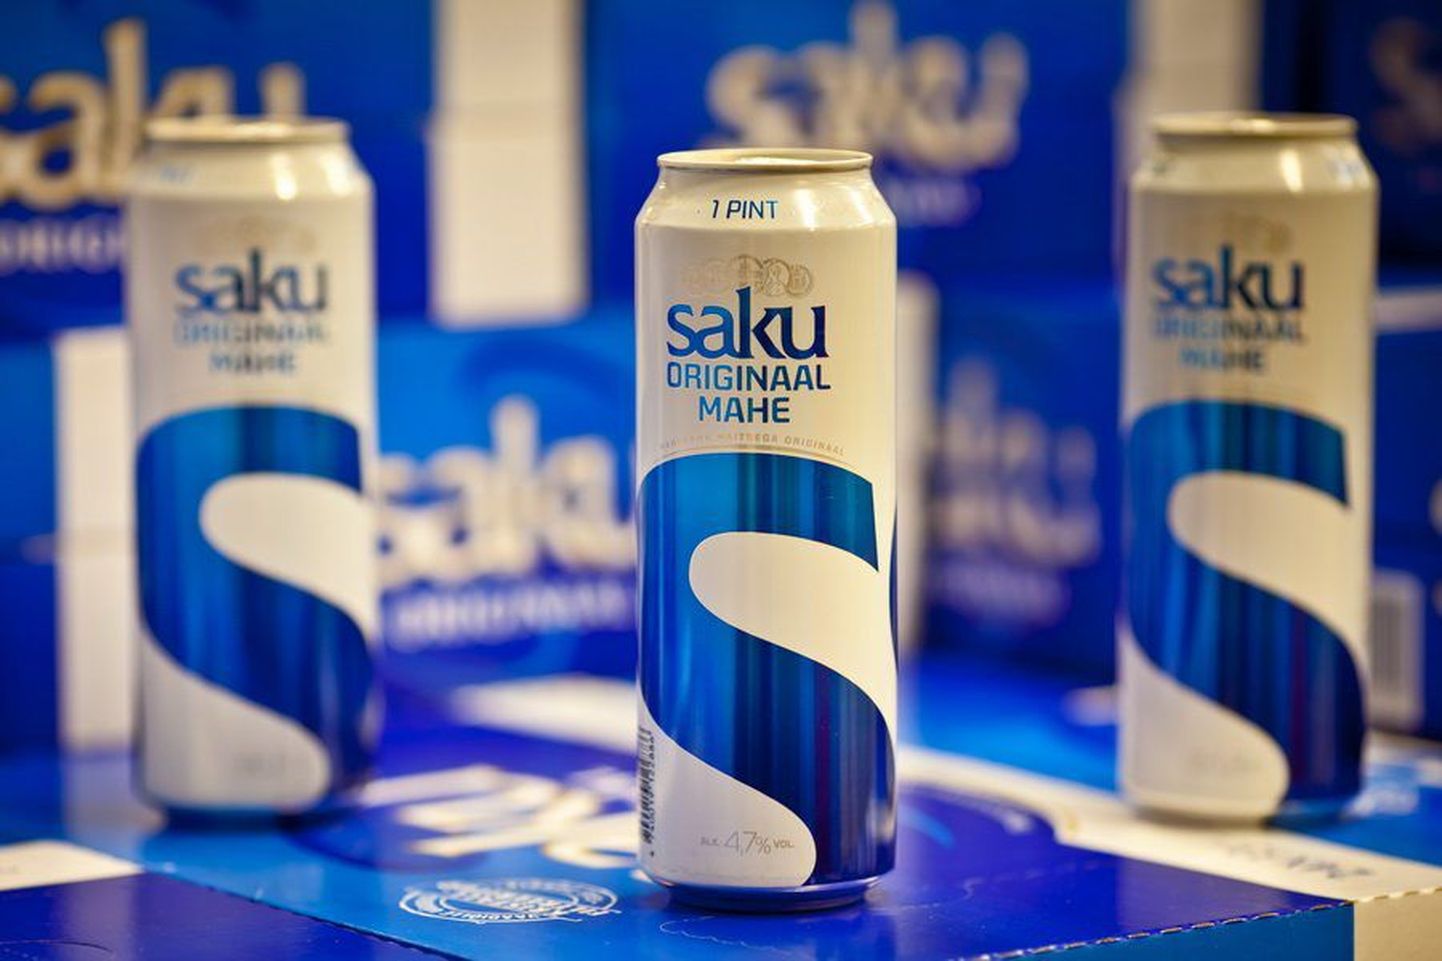 Название нового пива Saku вызвало нарекания властей.